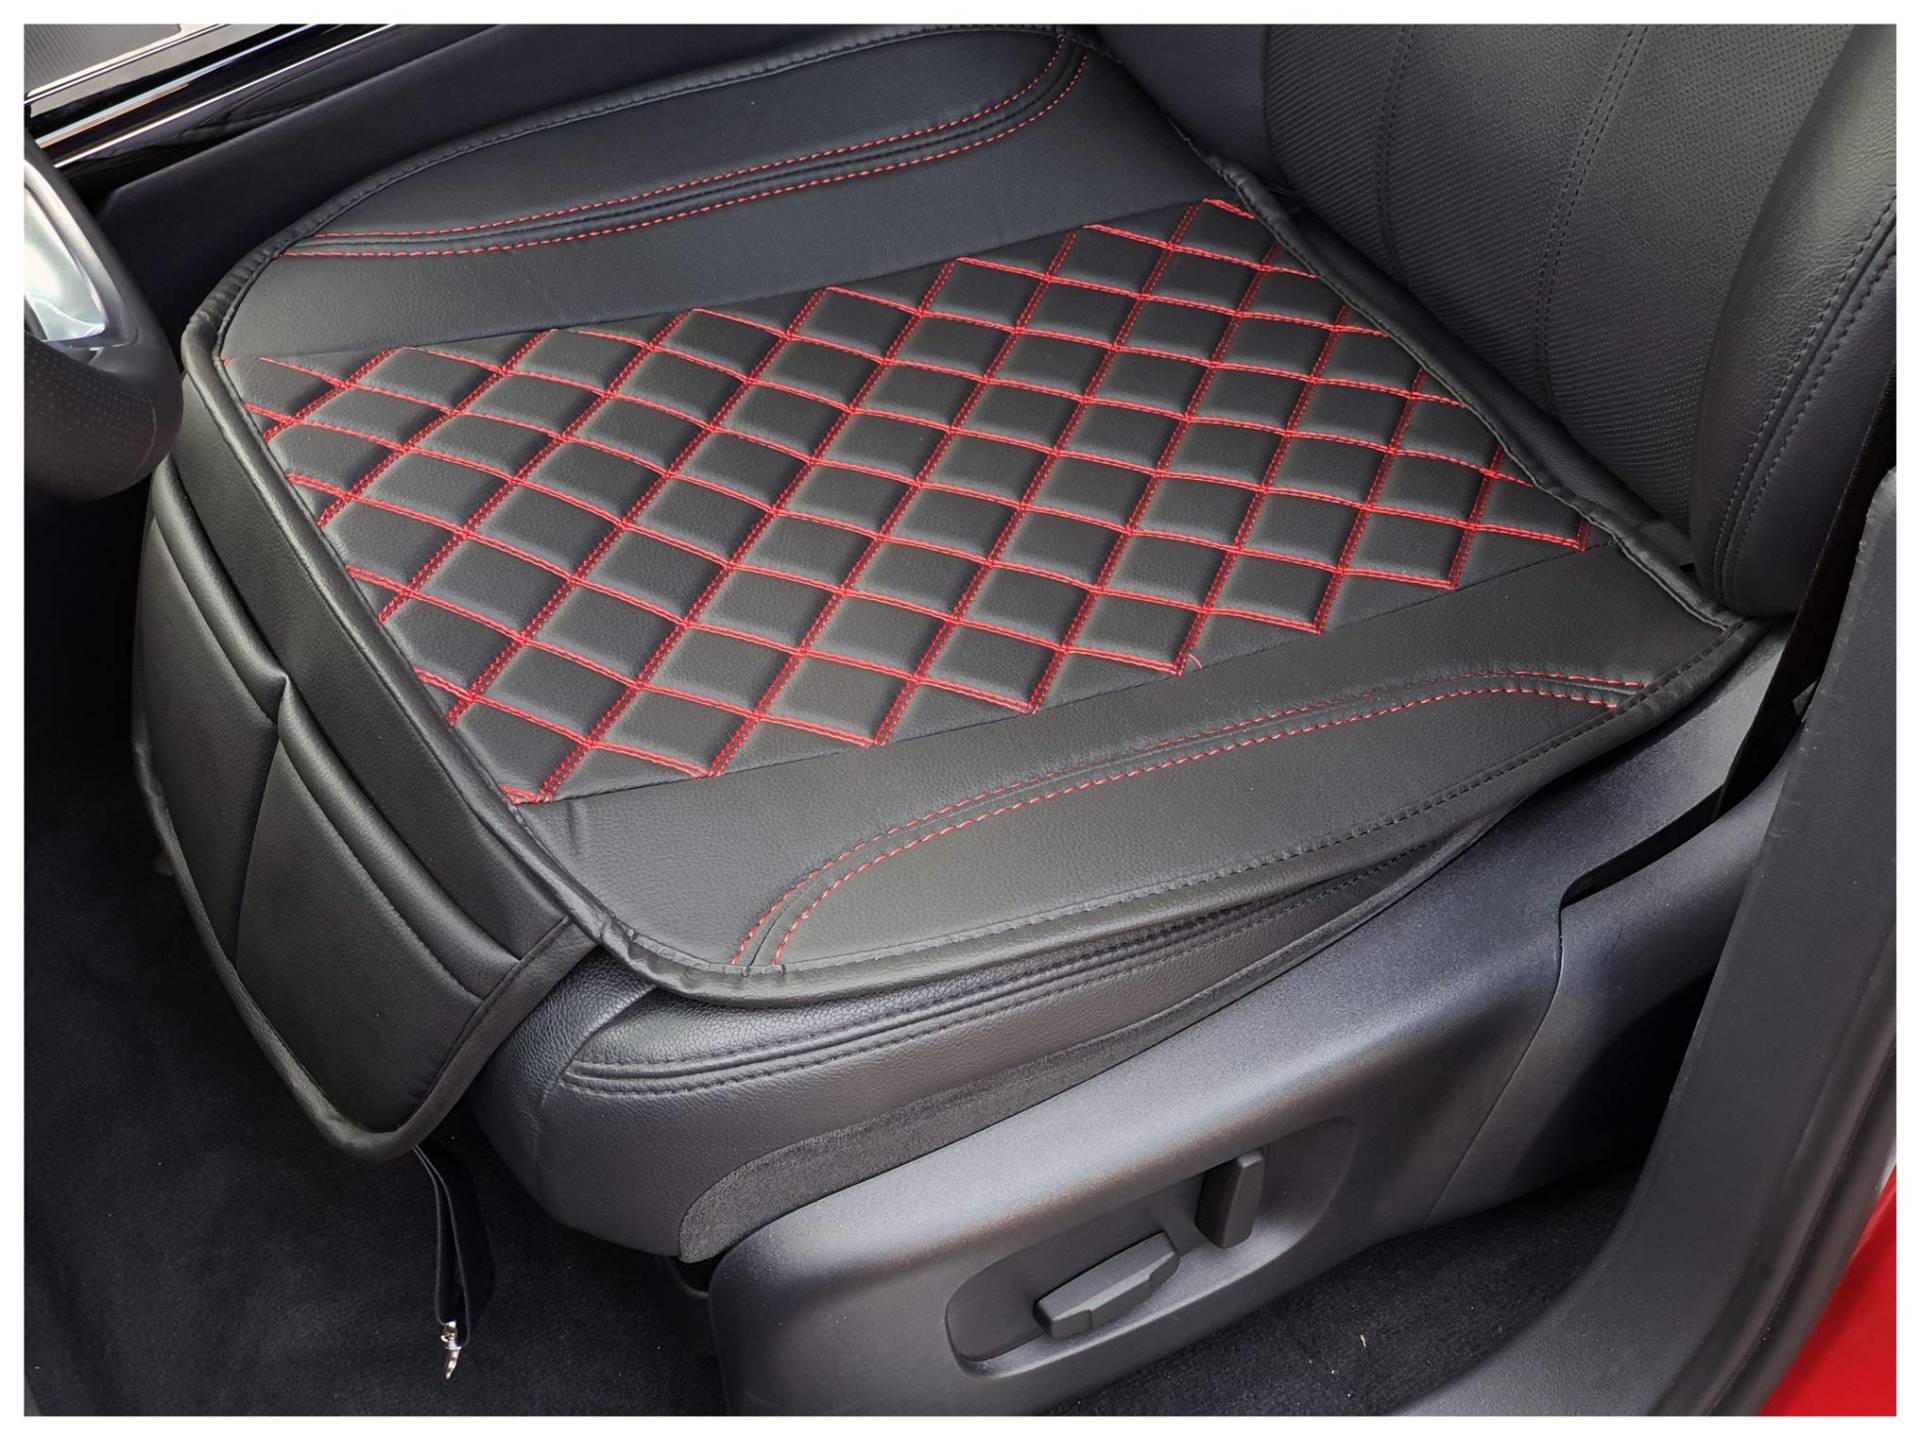 BREMER SITZBEZÜGE Sitzauflage Kunstleder Textilleder kompatibel mit Mazda CX-5 1. Gen. Sitzkissen in Kunstleder Schwarz/Rote Naht OT402 von BREMER SITZBEZÜGE